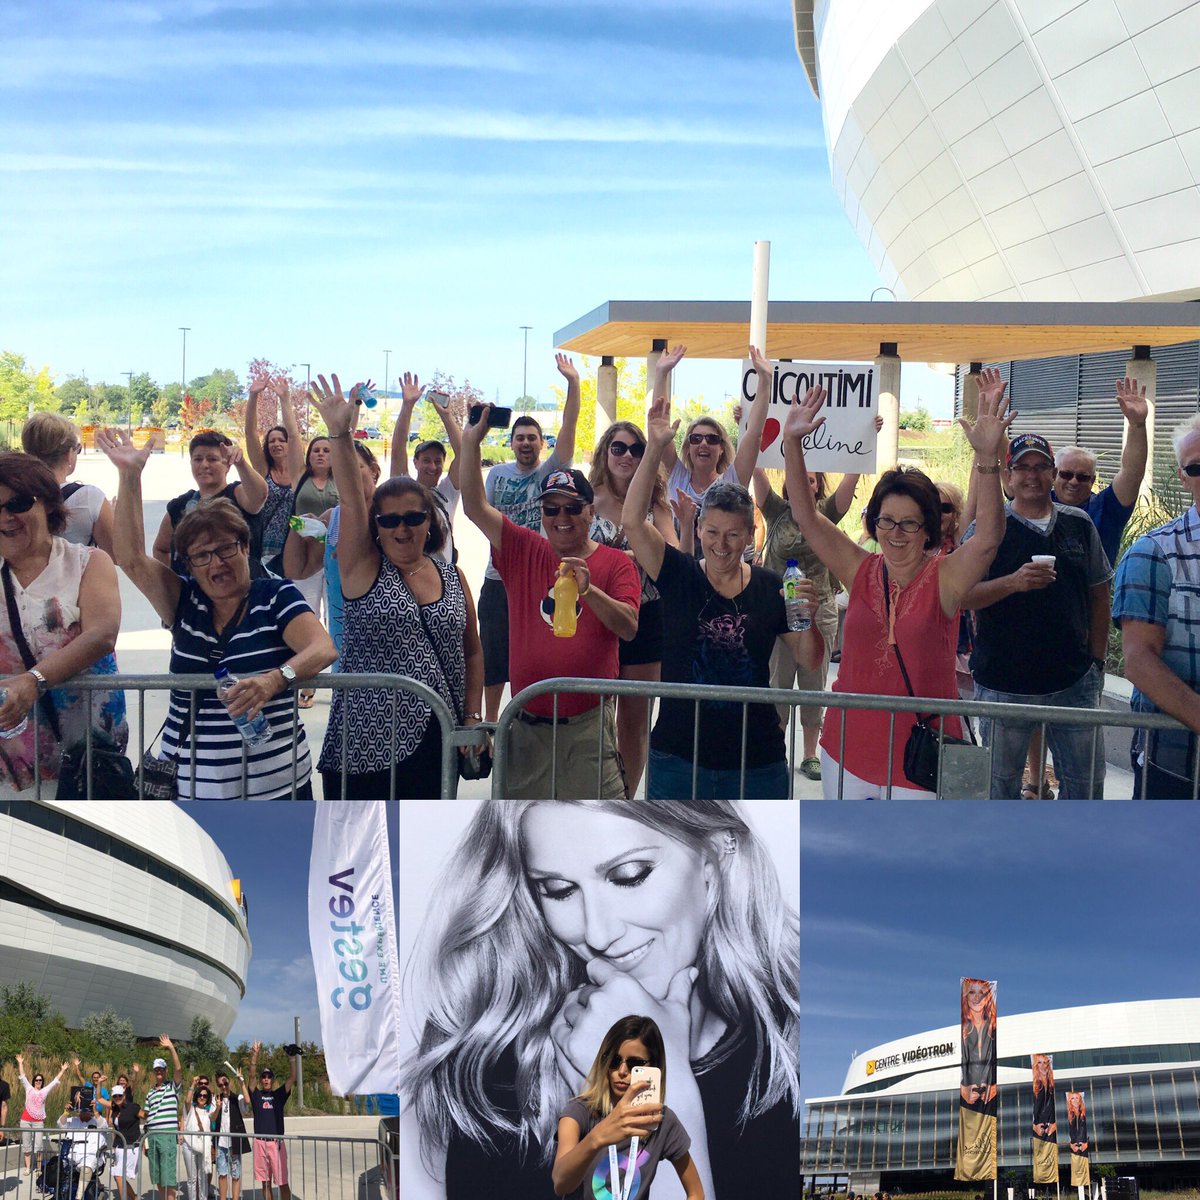 RT @GestevInc: Les vrais fans commencent à arriver, déjà, l'ambiance est incroyable! @celinedion 
#CelineDionQC https://t.co/KrBrzLtZnA